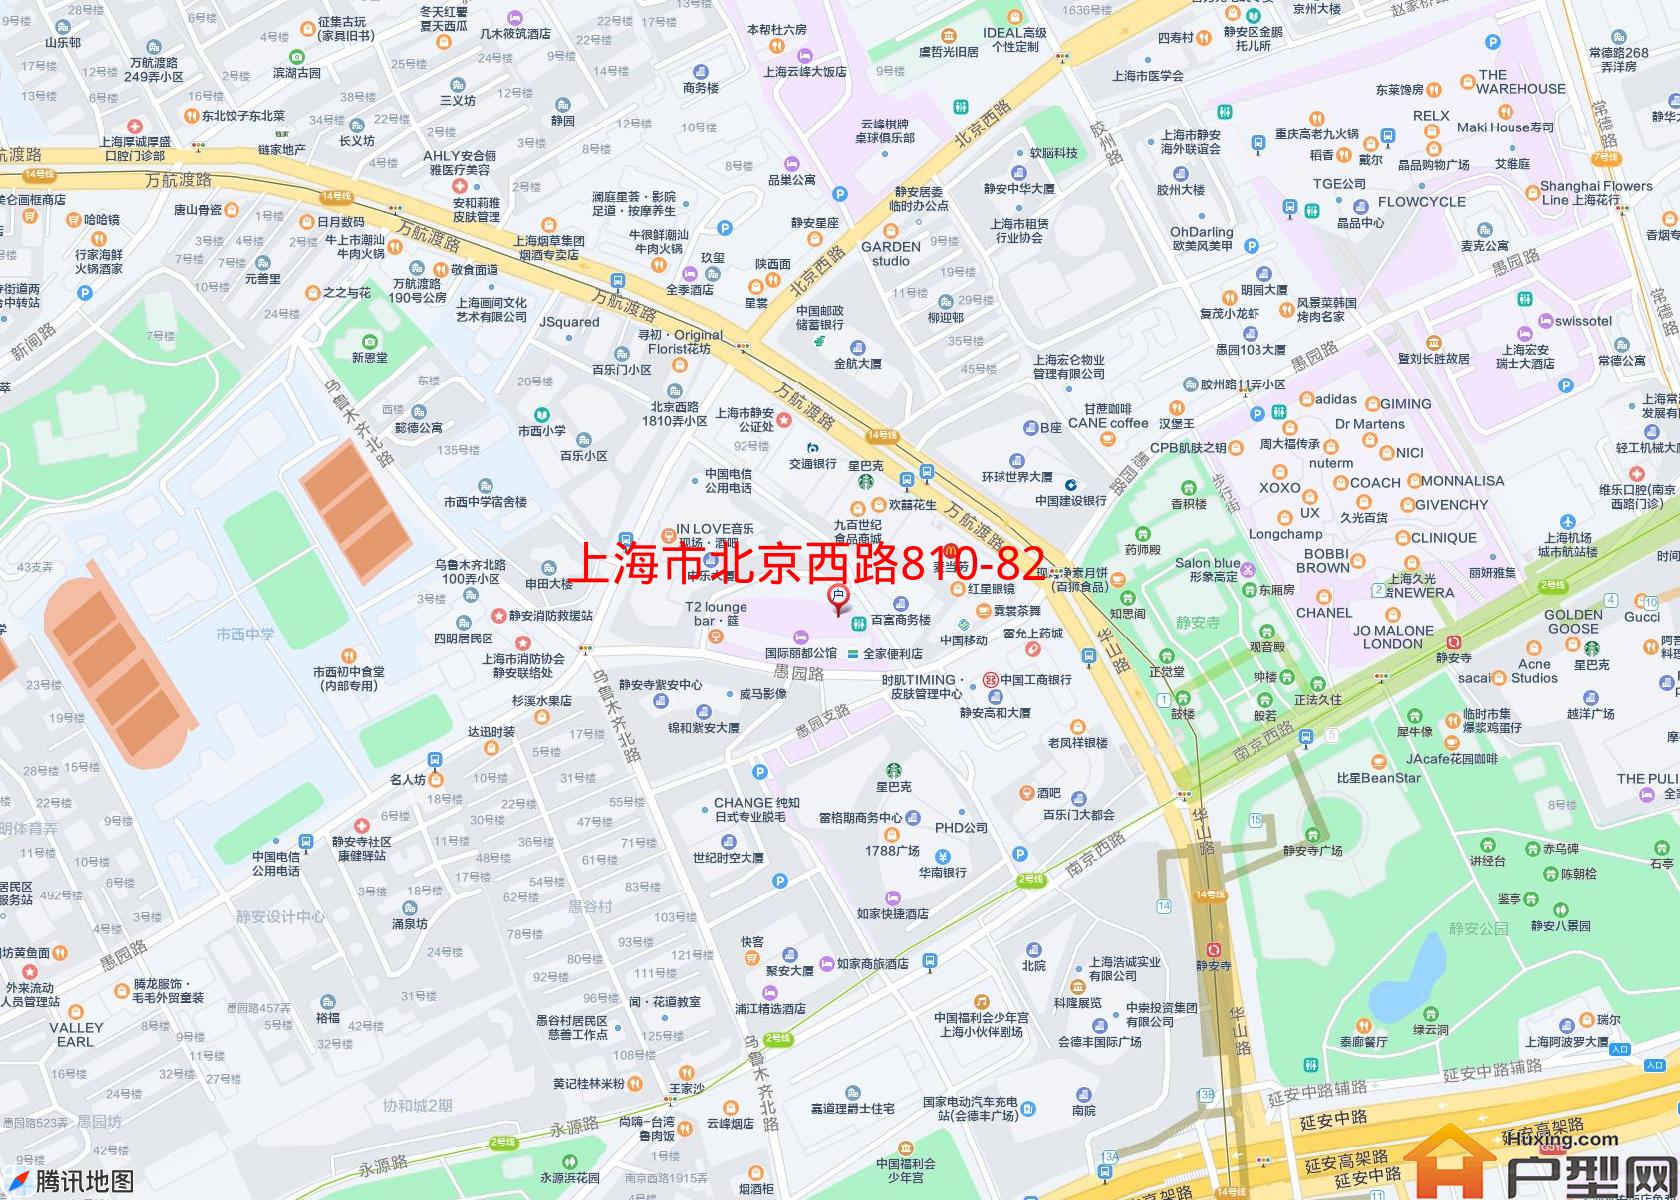 北京西路810-820号小区小区 - 户型网